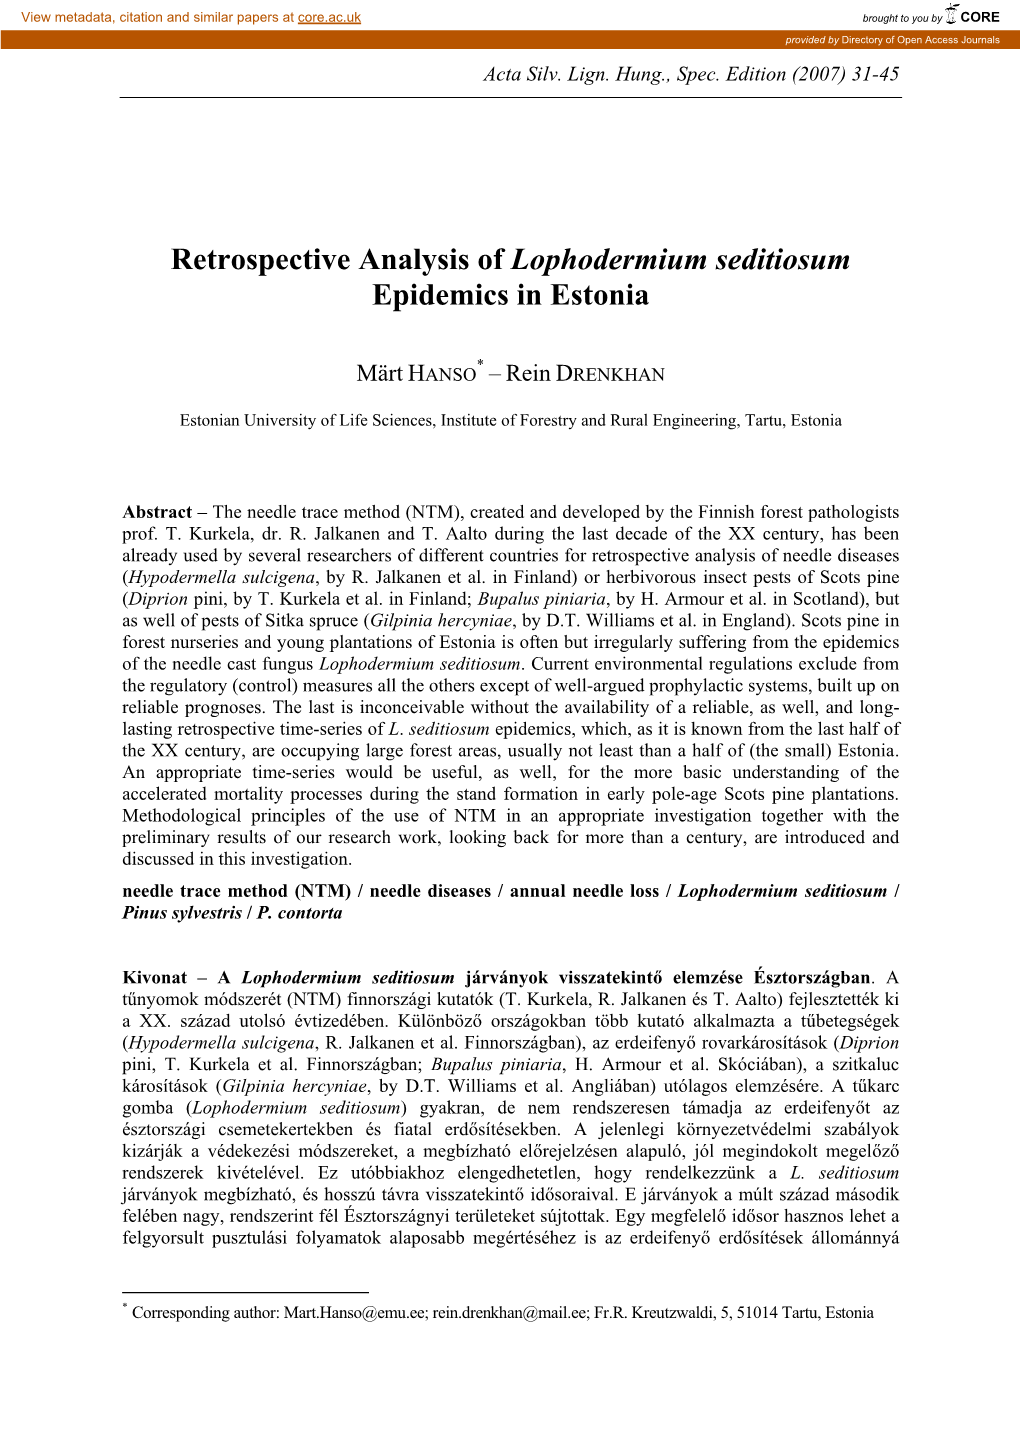 Retrospective Analysis of Lophodermium Seditiosum Epidemics in Estonia